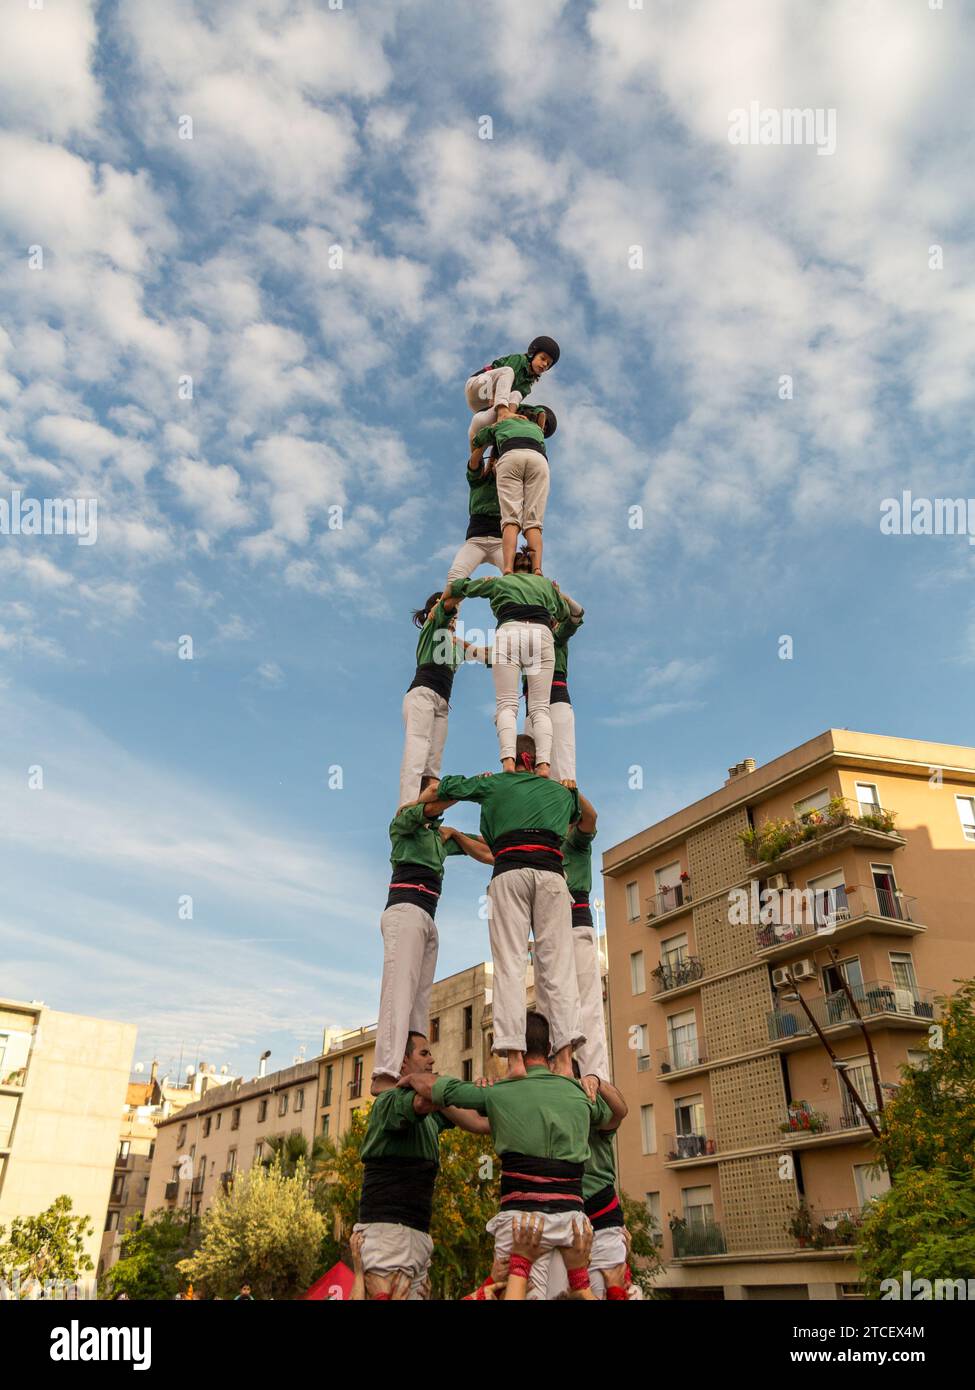 Castell ou tour humaine. Barcelone, Espagne Banque D'Images